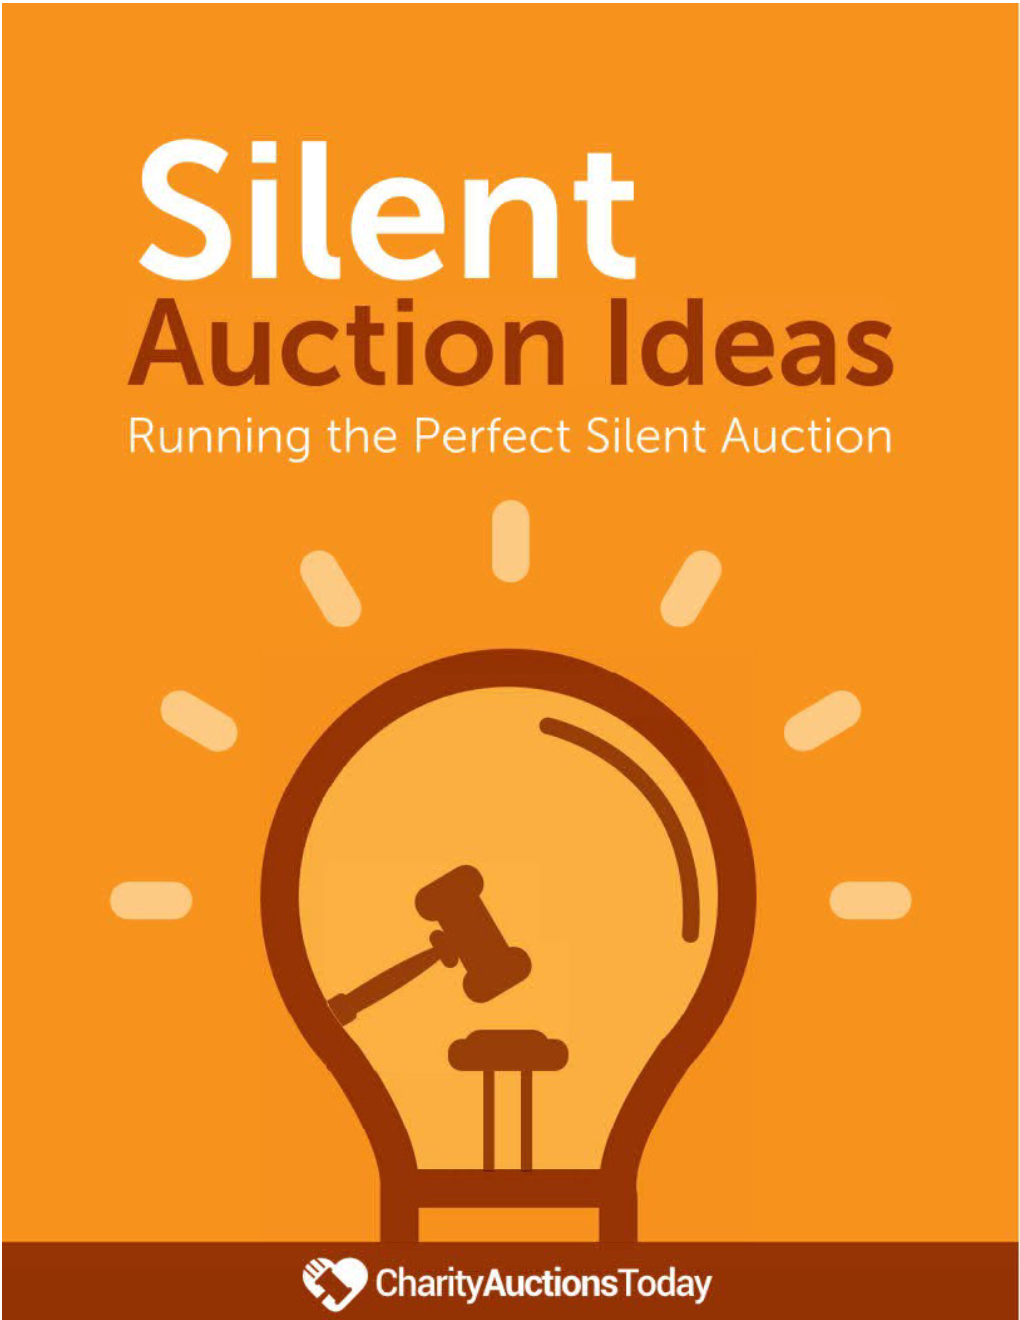 Silent Auction Services